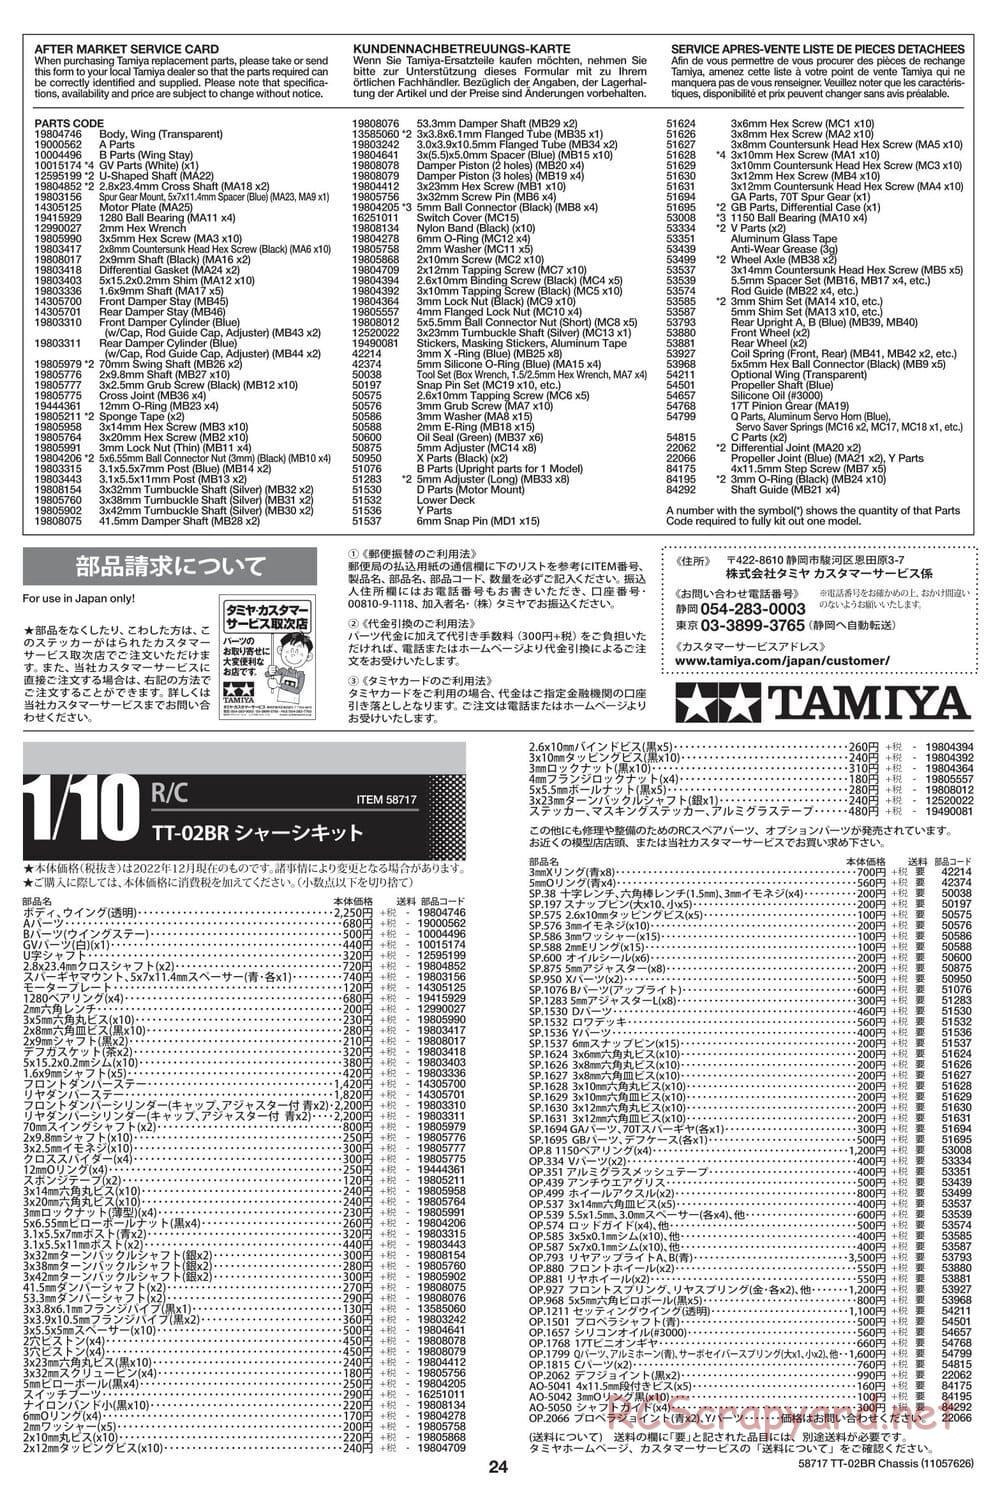 Tamiya - TT-02BR Chassis - Manual - Page 24